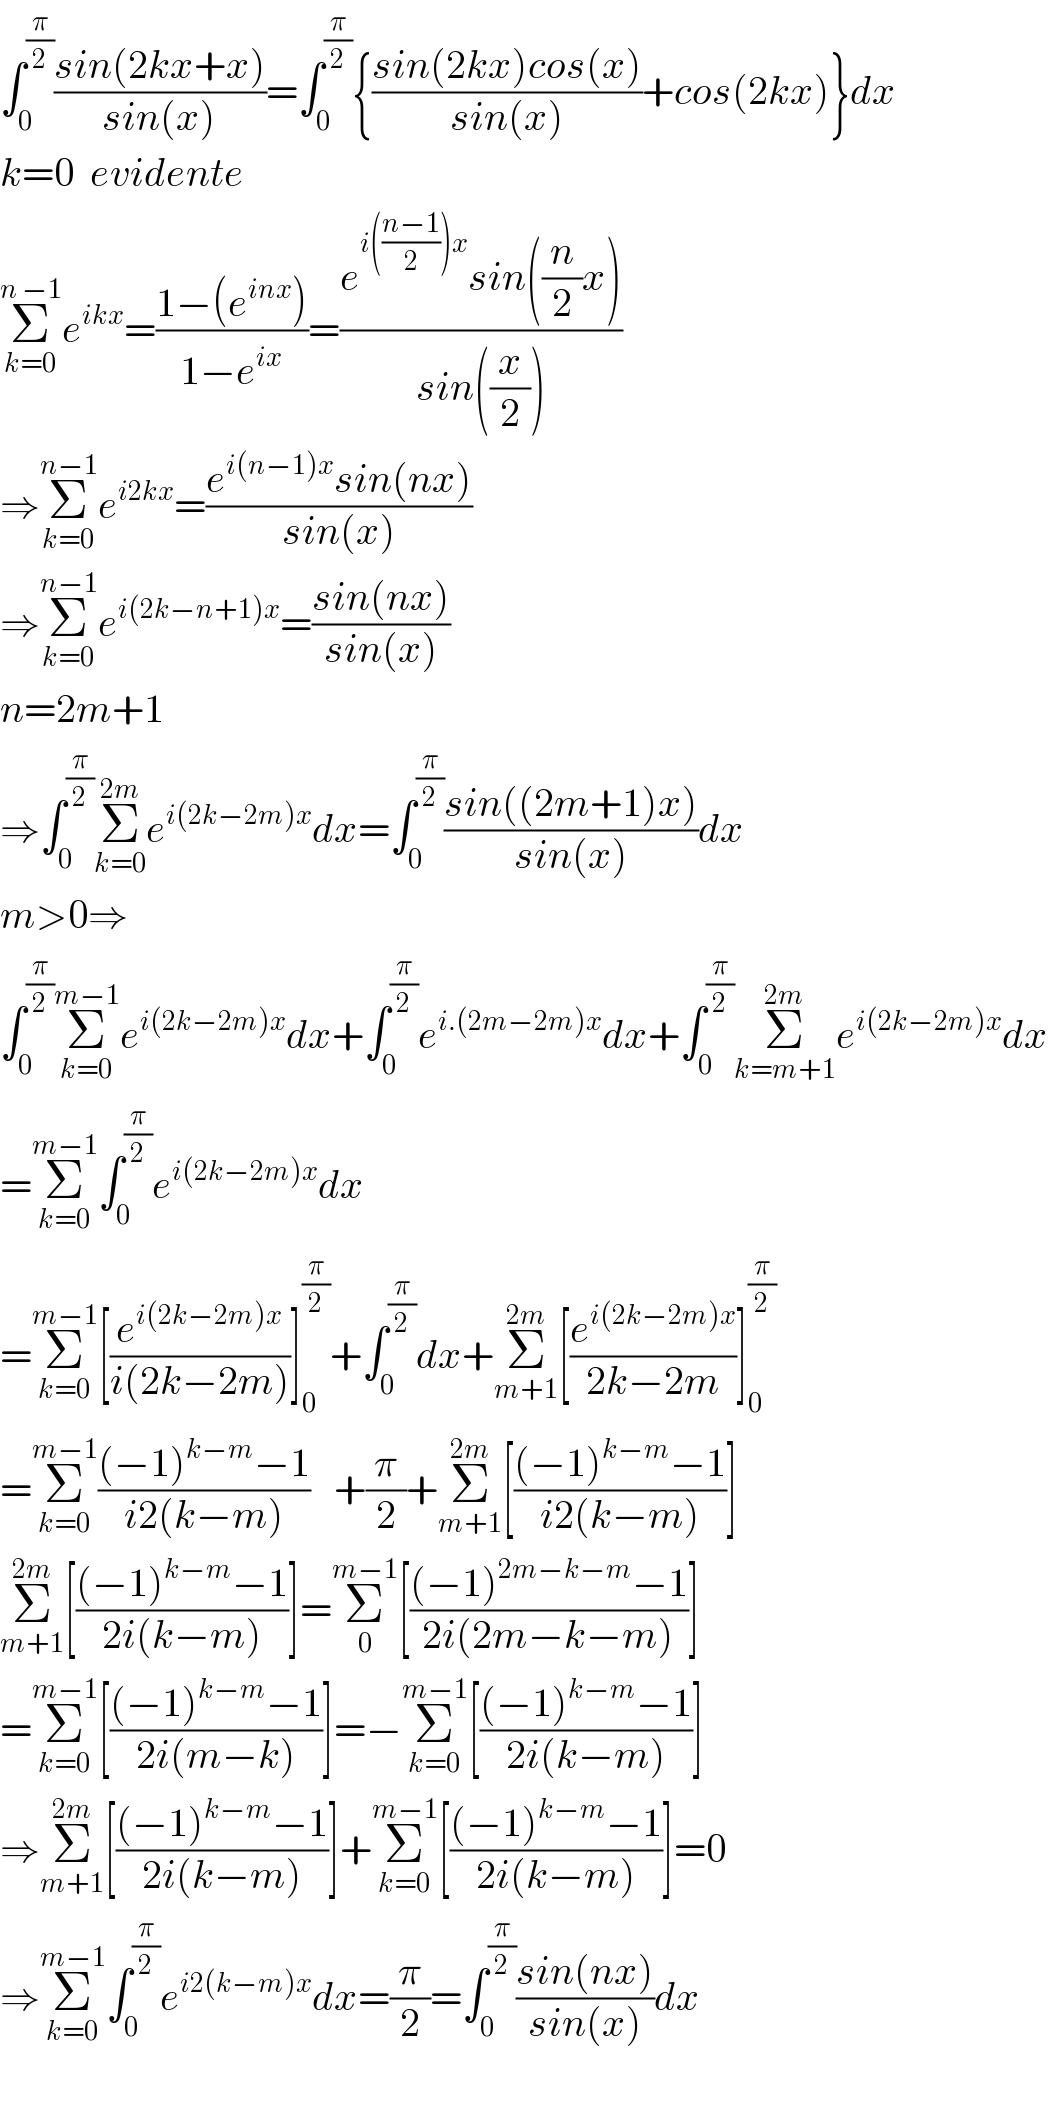 ∫_0 ^(π/2) ((sin(2kx+x))/(sin(x)))=∫_0 ^(π/2) {((sin(2kx)cos(x))/(sin(x)))+cos(2kx)}dx  k=0  evidente  Σ_(k=0) ^(n −1) e^(ikx) =((1−(e^(inx) ))/(1−e^(ix) ))=((e^(i(((n−1)/2))x) sin((n/2)x))/(sin((x/2))))  ⇒Σ_(k=0) ^(n−1) e^(i2kx) =((e^(i(n−1)x) sin(nx))/(sin(x)))  ⇒Σ_(k=0) ^(n−1) e^(i(2k−n+1)x) =((sin(nx))/(sin(x)))  n=2m+1  ⇒∫_0 ^(π/2) Σ_(k=0) ^(2m) e^(i(2k−2m)x) dx=∫_0 ^(π/2) ((sin((2m+1)x))/(sin(x)))dx  m>0⇒  ∫_0 ^(π/2) Σ_(k=0) ^(m−1) e^(i(2k−2m)x) dx+∫_0 ^(π/2) e^(i.(2m−2m)x) dx+∫_0 ^(π/2) Σ_(k=m+1) ^(2m) e^(i(2k−2m)x) dx  =Σ_(k=0) ^(m−1) ∫_0 ^(π/2) e^(i(2k−2m)x) dx  =Σ_(k=0) ^(m−1) [(e^(i(2k−2m)x) /(i(2k−2m)))]_0 ^(π/2) +∫_0 ^(π/2) dx+Σ_(m+1) ^(2m) [(e^(i(2k−2m)x) /(2k−2m))]_0 ^(π/2)   =Σ_(k=0) ^(m−1) (((−1)^(k−m) −1)/(i2(k−m)))   +(π/2)+Σ_(m+1) ^(2m) [(((−1)^(k−m) −1)/(i2(k−m)))]  Σ_(m+1) ^(2m) [(((−1)^(k−m) −1)/(2i(k−m)))]=Σ_0 ^(m−1) [(((−1)^(2m−k−m) −1)/(2i(2m−k−m)))]  =Σ_(k=0) ^(m−1) [(((−1)^(k−m) −1)/(2i(m−k)))]=−Σ_(k=0) ^(m−1) [(((−1)^(k−m) −1)/(2i(k−m)))]  ⇒Σ_(m+1) ^(2m) [(((−1)^(k−m) −1)/(2i(k−m)))]+Σ_(k=0) ^(m−1) [(((−1)^(k−m) −1)/(2i(k−m)))]=0  ⇒Σ_(k=0) ^(m−1) ∫_0 ^(π/2) e^(i2(k−m)x) dx=(π/2)=∫_0 ^(π/2) ((sin(nx))/(sin(x)))dx    